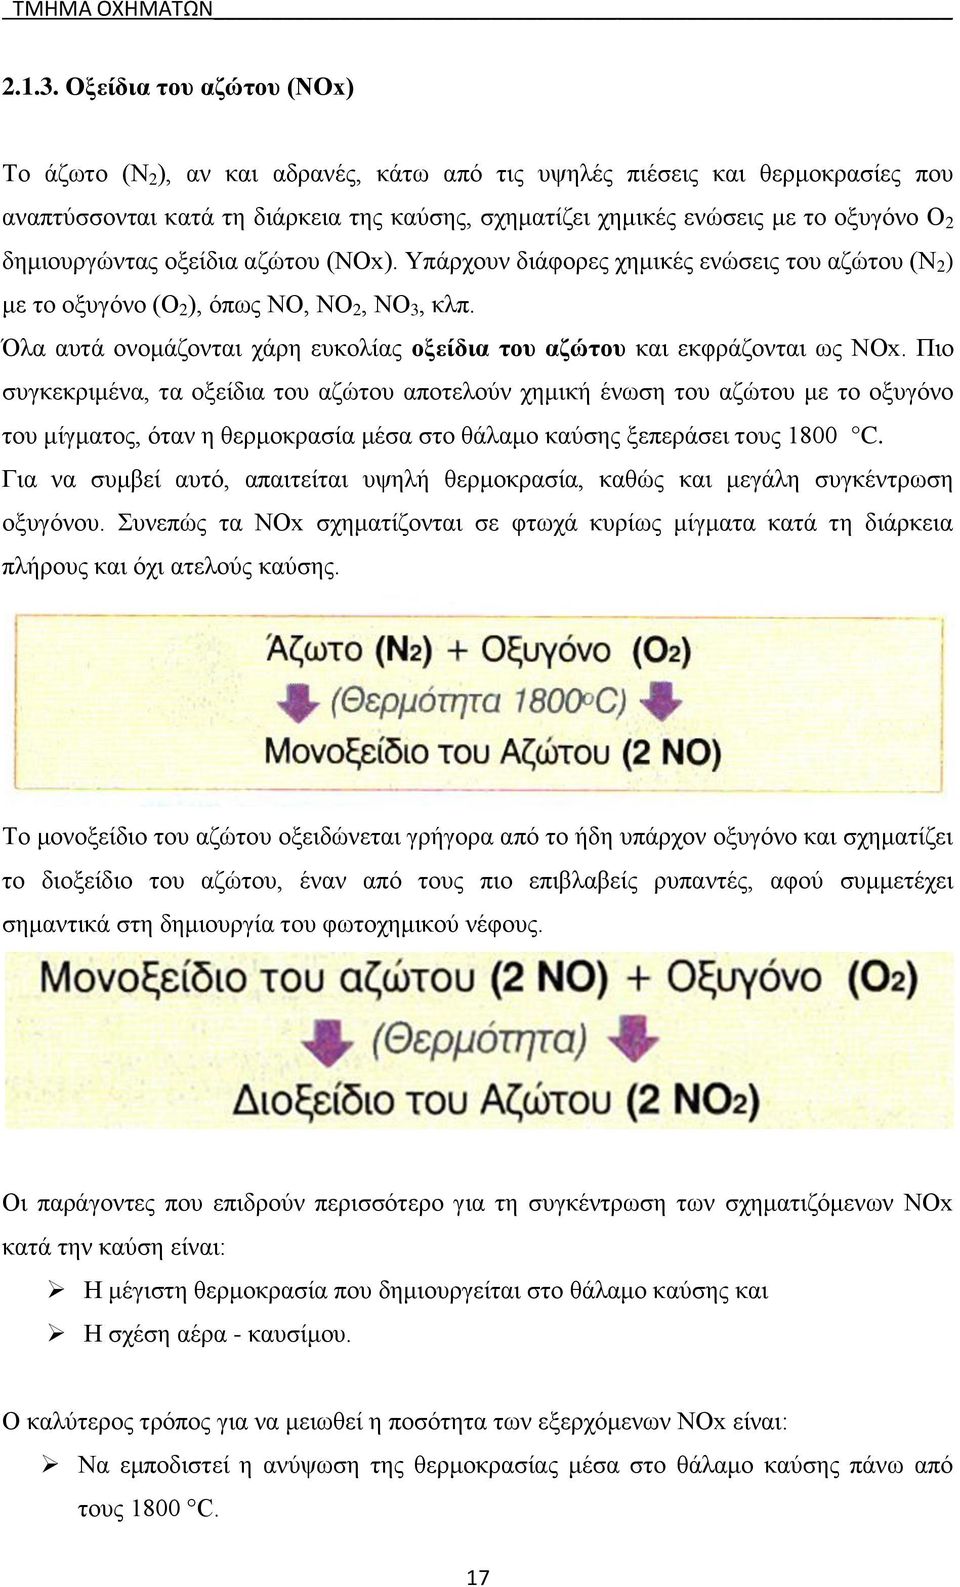 δημιουργώντας οξείδια αζώτου (NOx). Υπάρχουν διάφορες χημικές ενώσεις του αζώτου (Ν 2 ) με το οξυγόνο (Ο 2 ), όπως ΝΟ, NO 2, NΟ 3, κλπ.